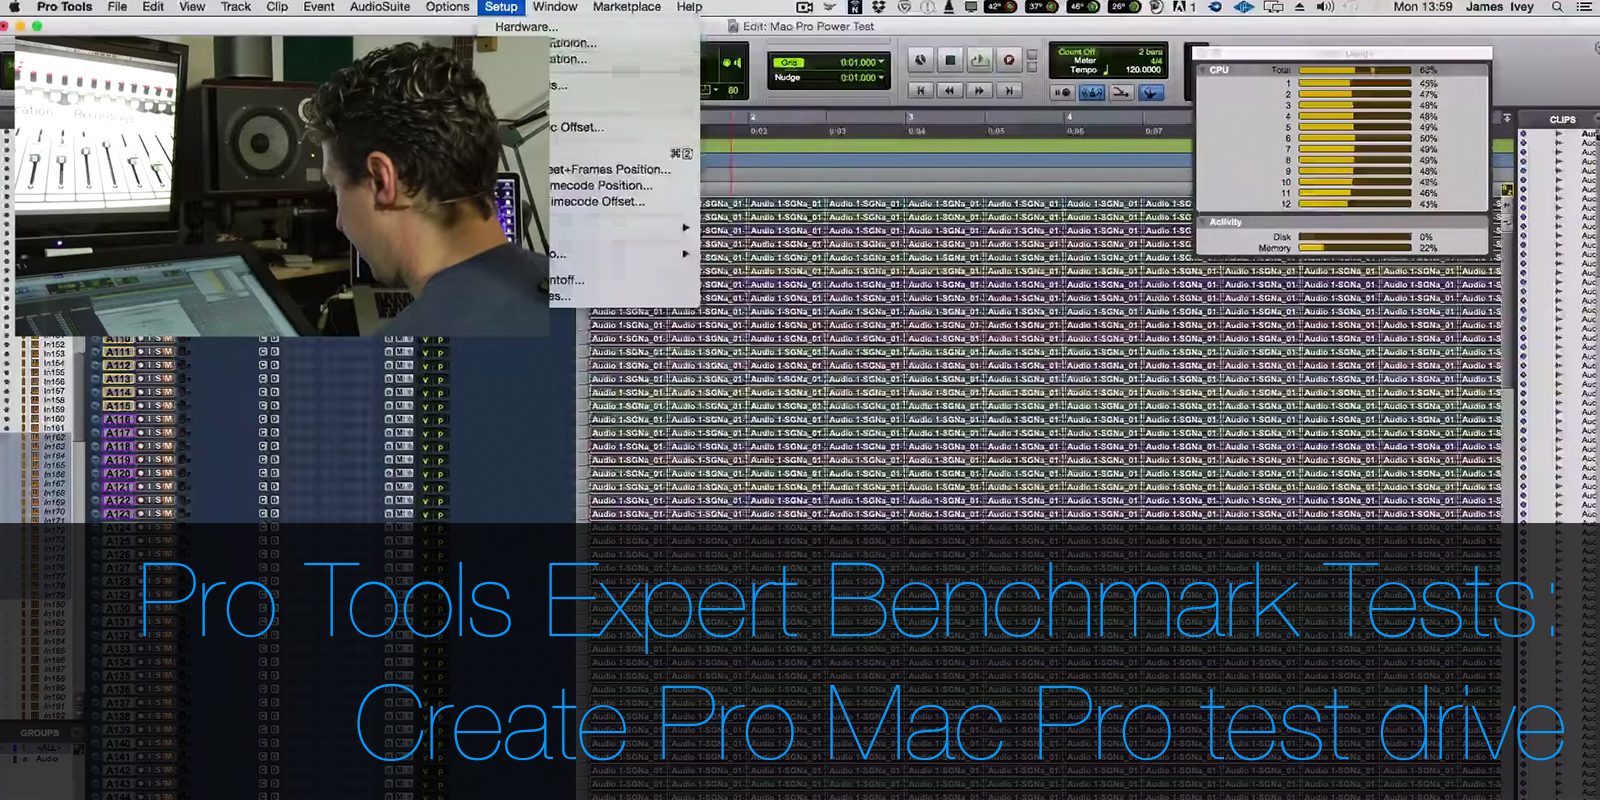 pro tools 11 mac requirements